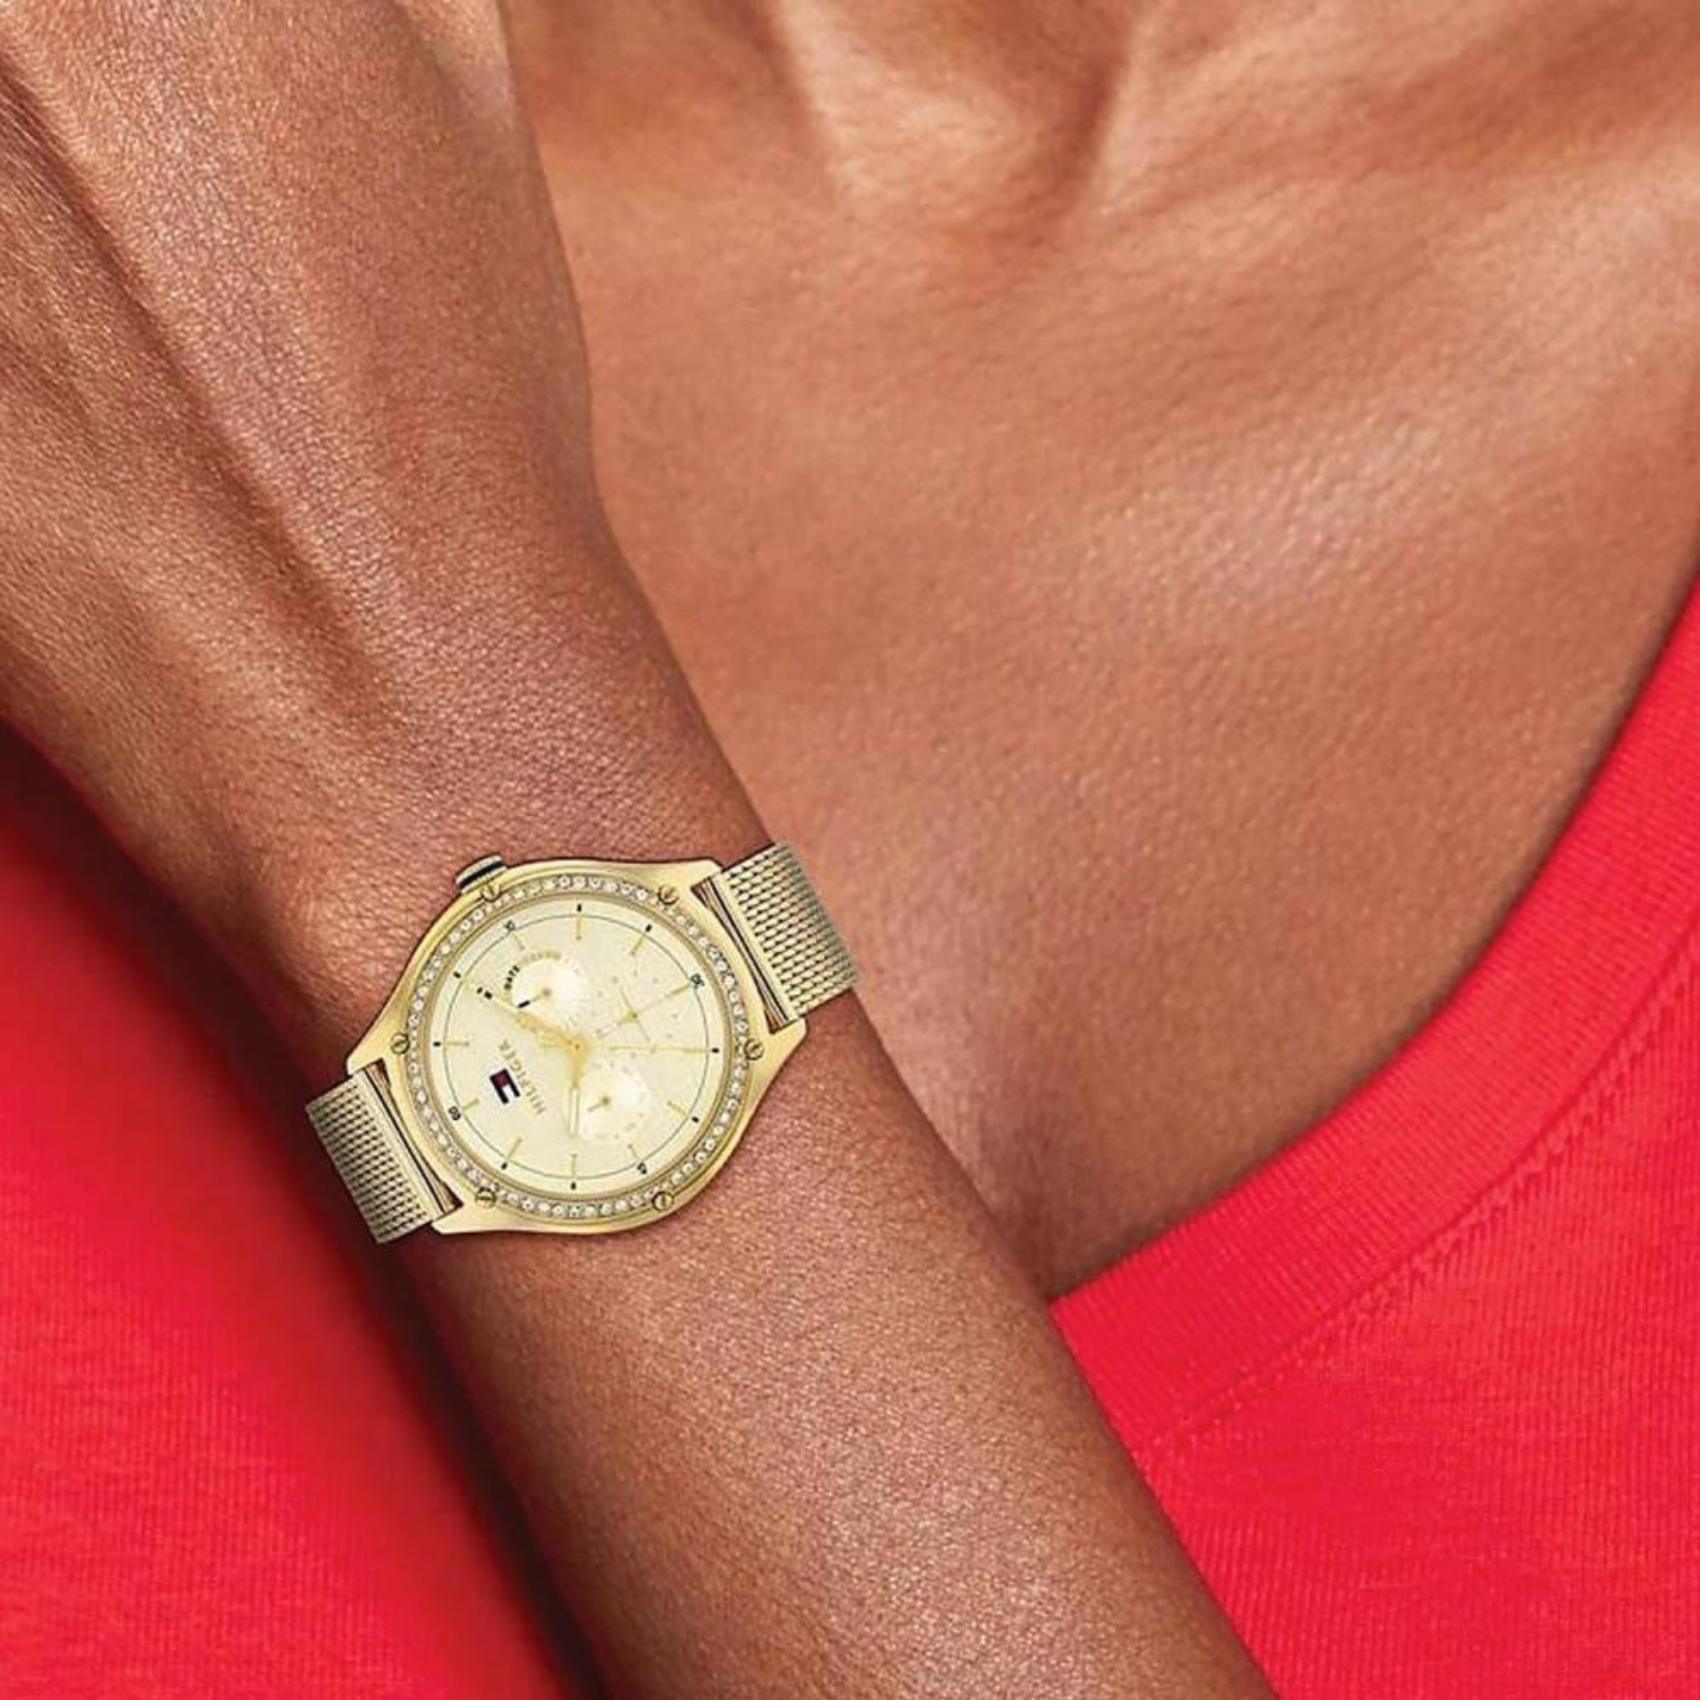 Γυναικείο ρολόι Tommy Hilfiger Lexi 1782655 με χρυσό ατσάλινο μπρασελέ και χρυσό καντράν διαμέτρου 41mm με ζιργκόν.